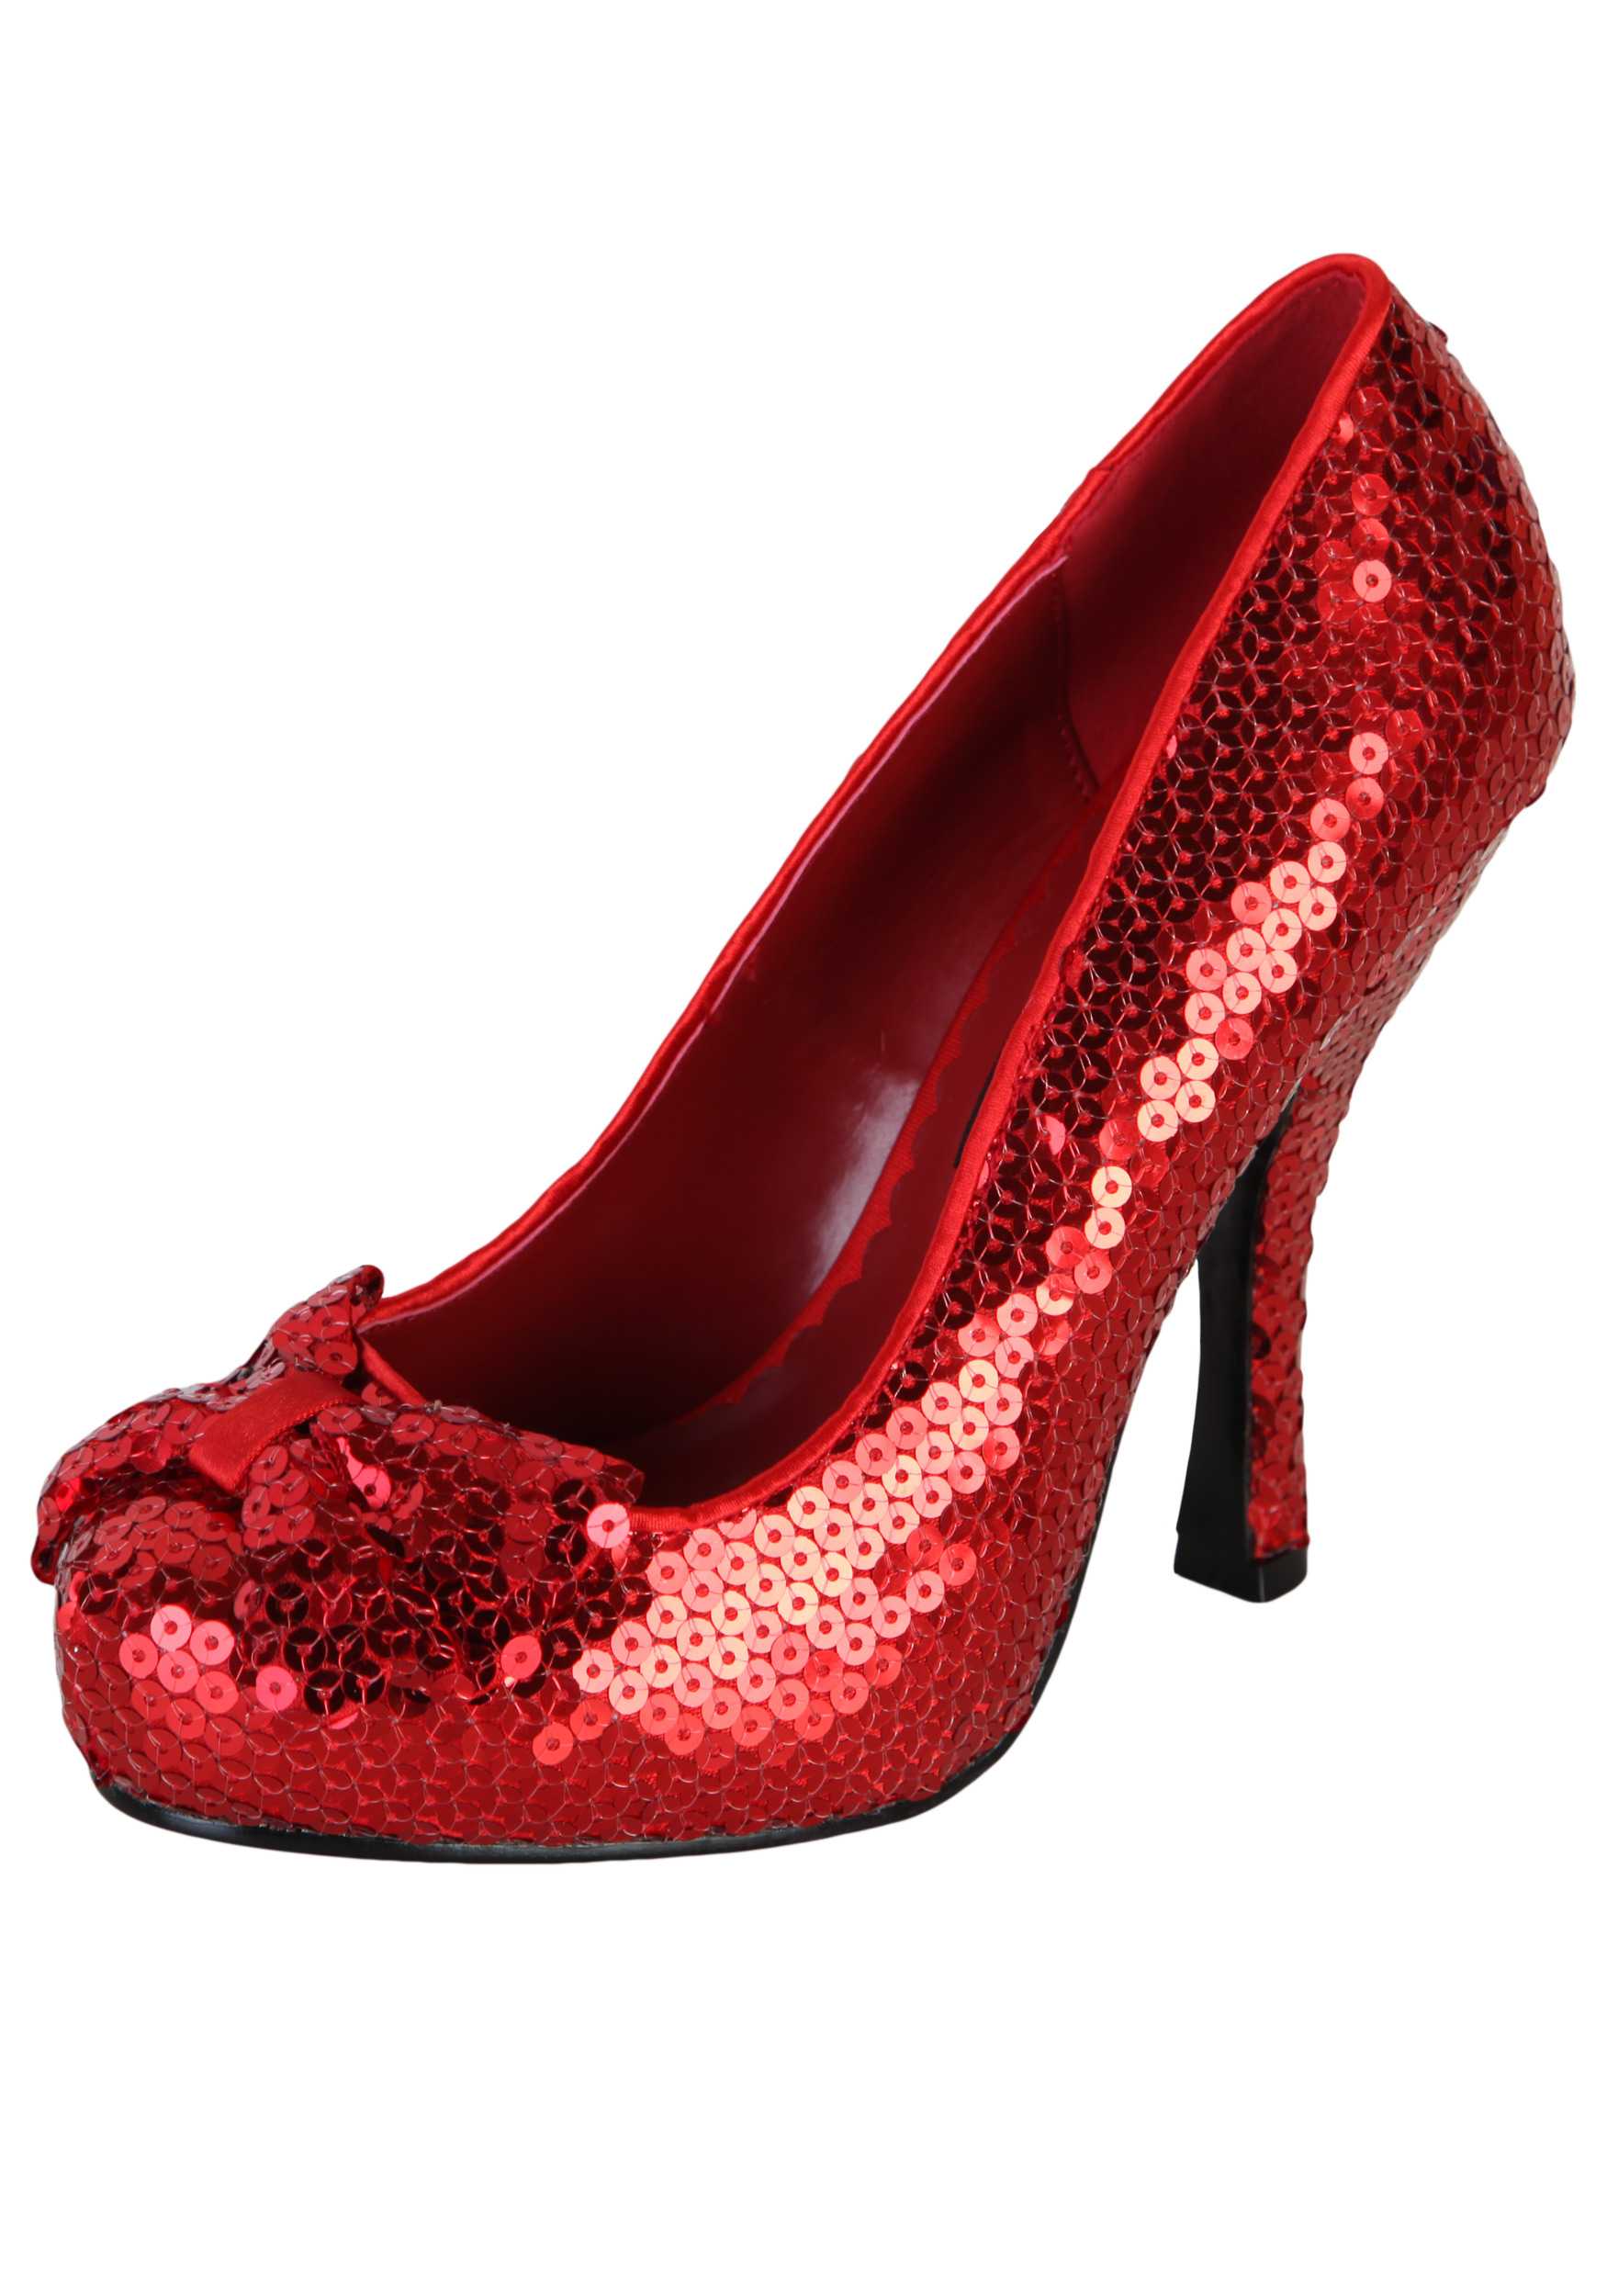 High heels - Women's Shoes Photo (33462385) - Fanpop